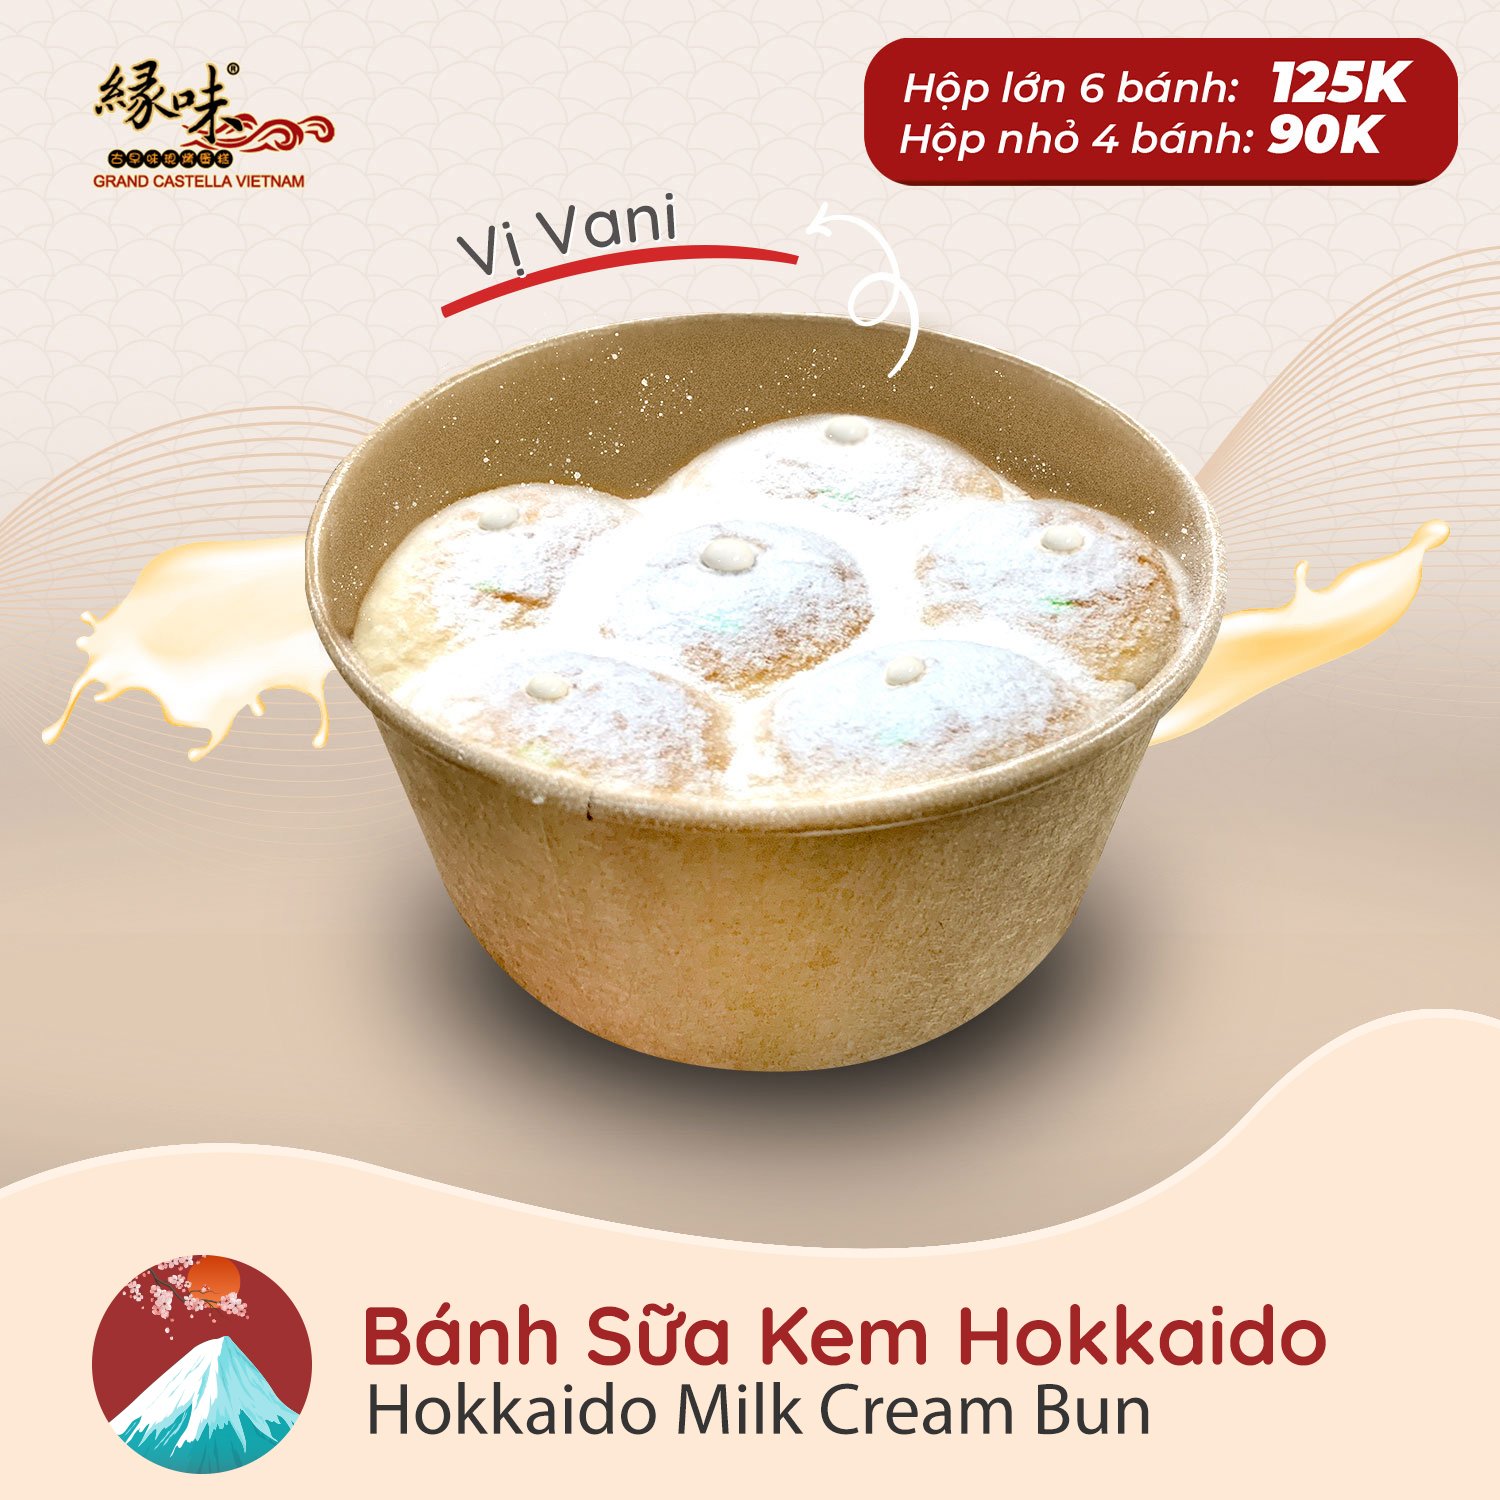 Bánh Sữa Kem Hokkaido Vị Vani 6 Múi